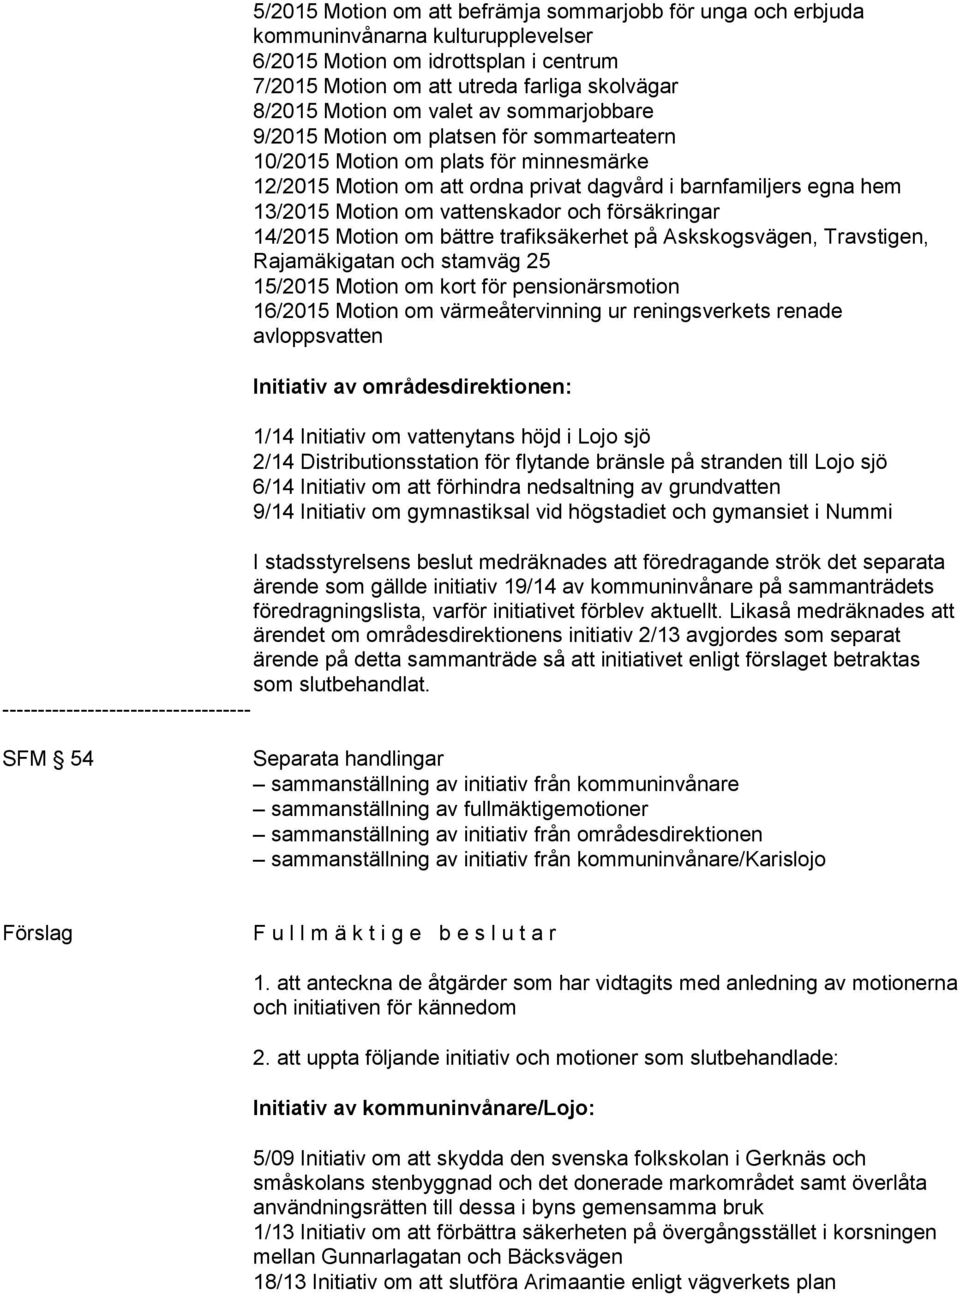 vattenskador och försäkringar 14/2015 Motion om bättre trafiksäkerhet på Askskogsvägen, Travstigen, Rajamäkigatan och stamväg 25 15/2015 Motion om kort för pensionärsmotion 16/2015 Motion om